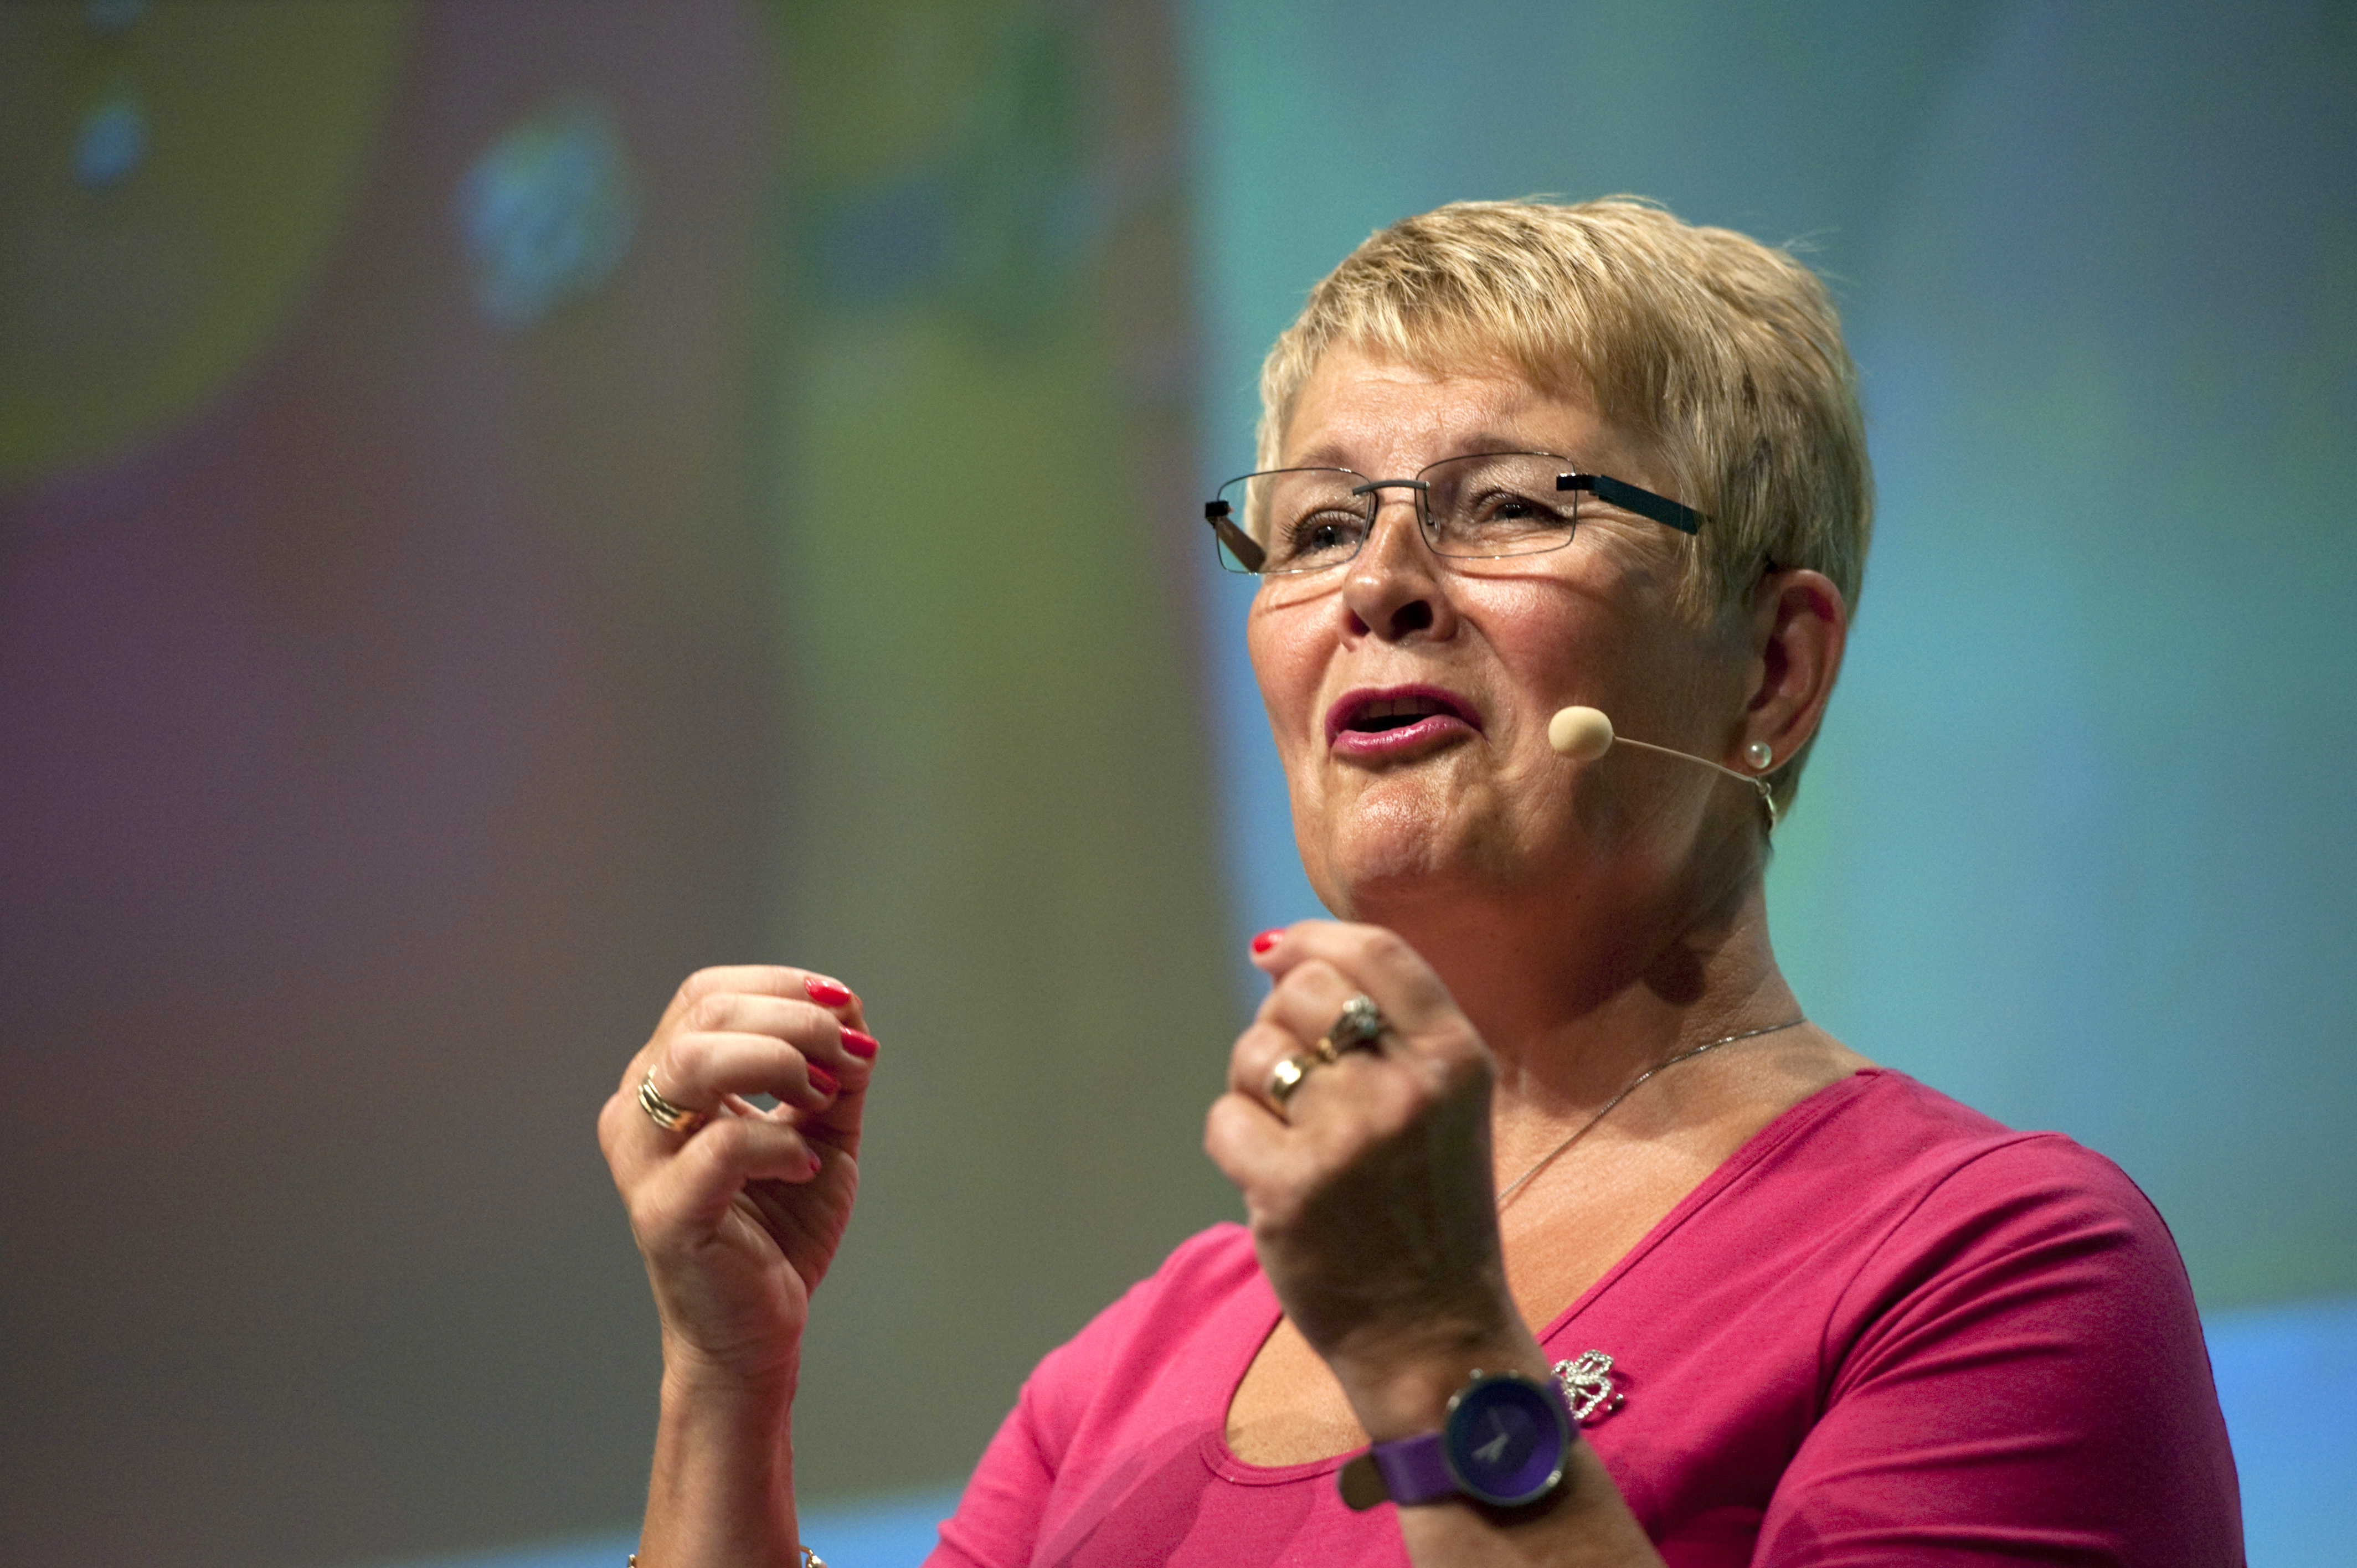 Riksdagsvalet 2010, vänsterpartiet, Maud Olofsson, Centerpartiet